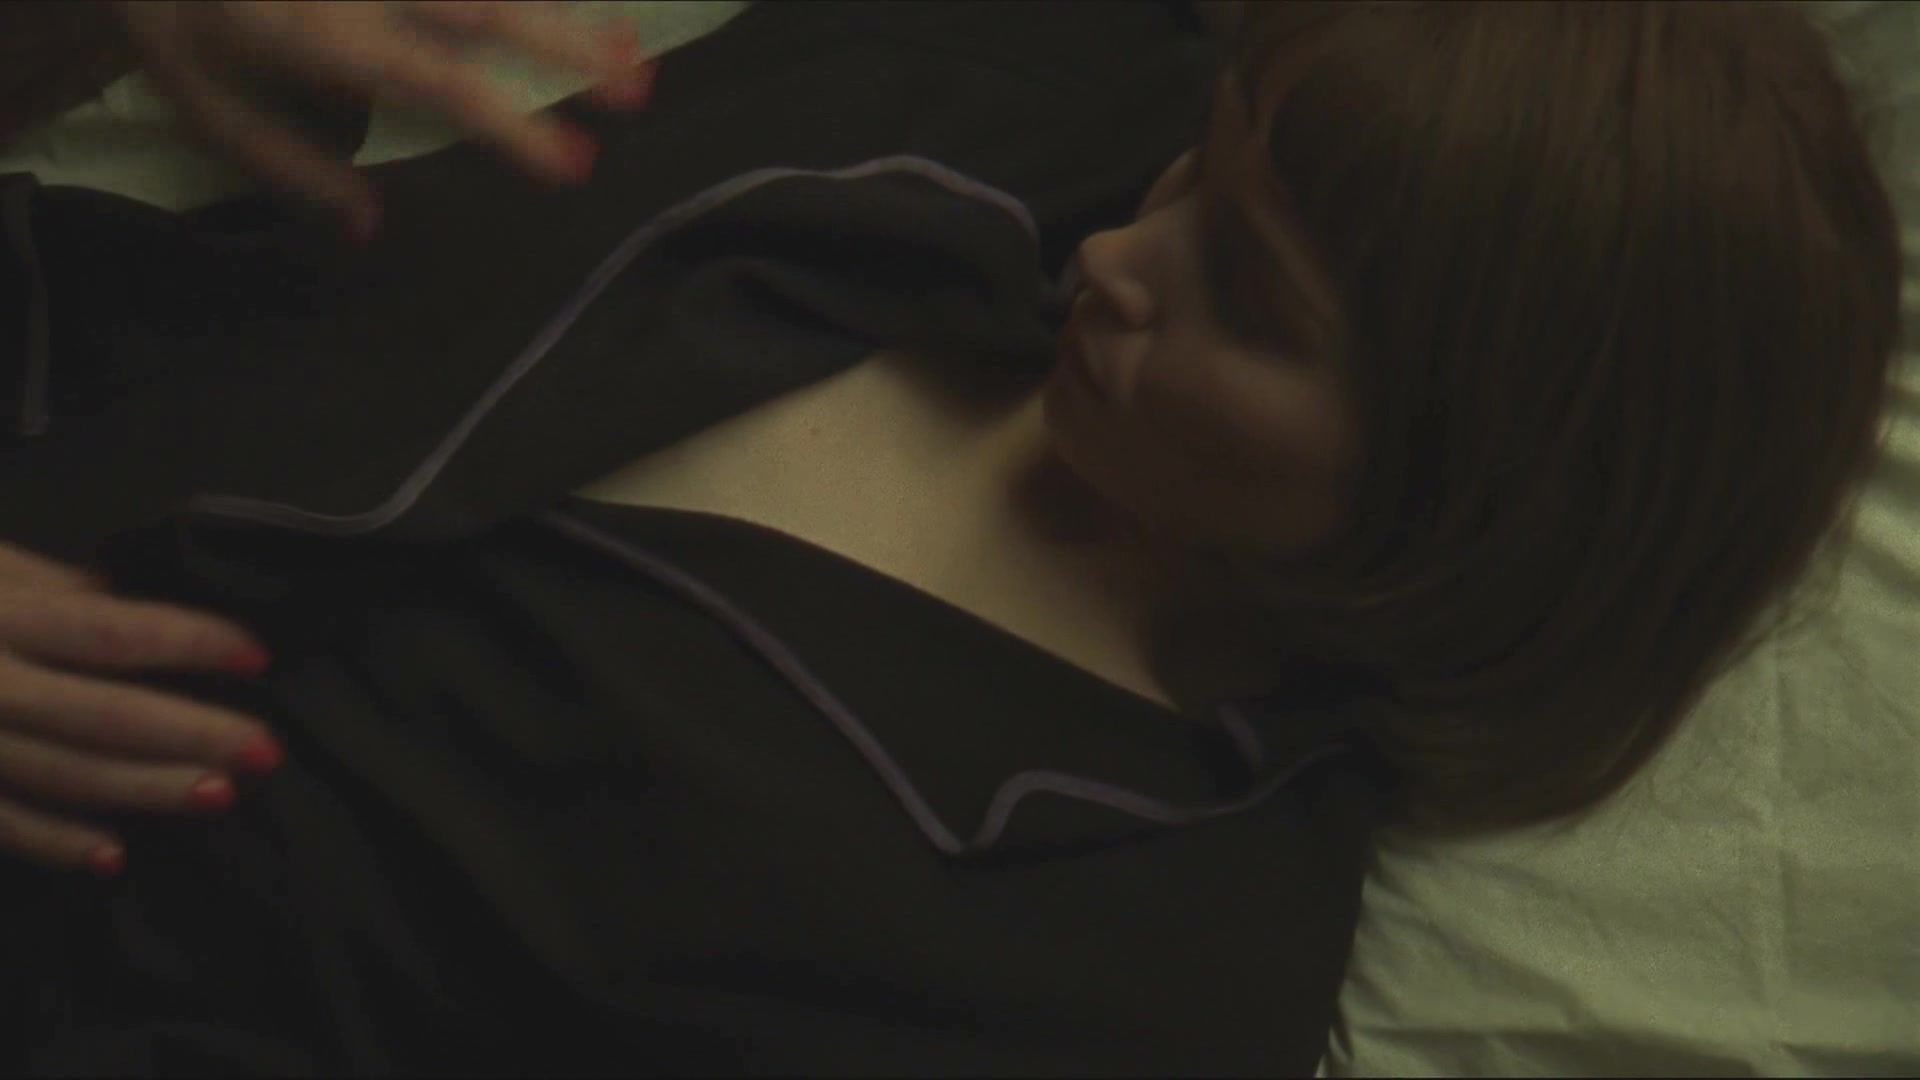 Spanish Rooney Mara, Cate Blanchett nude - Carol (2015) Sharing - 2